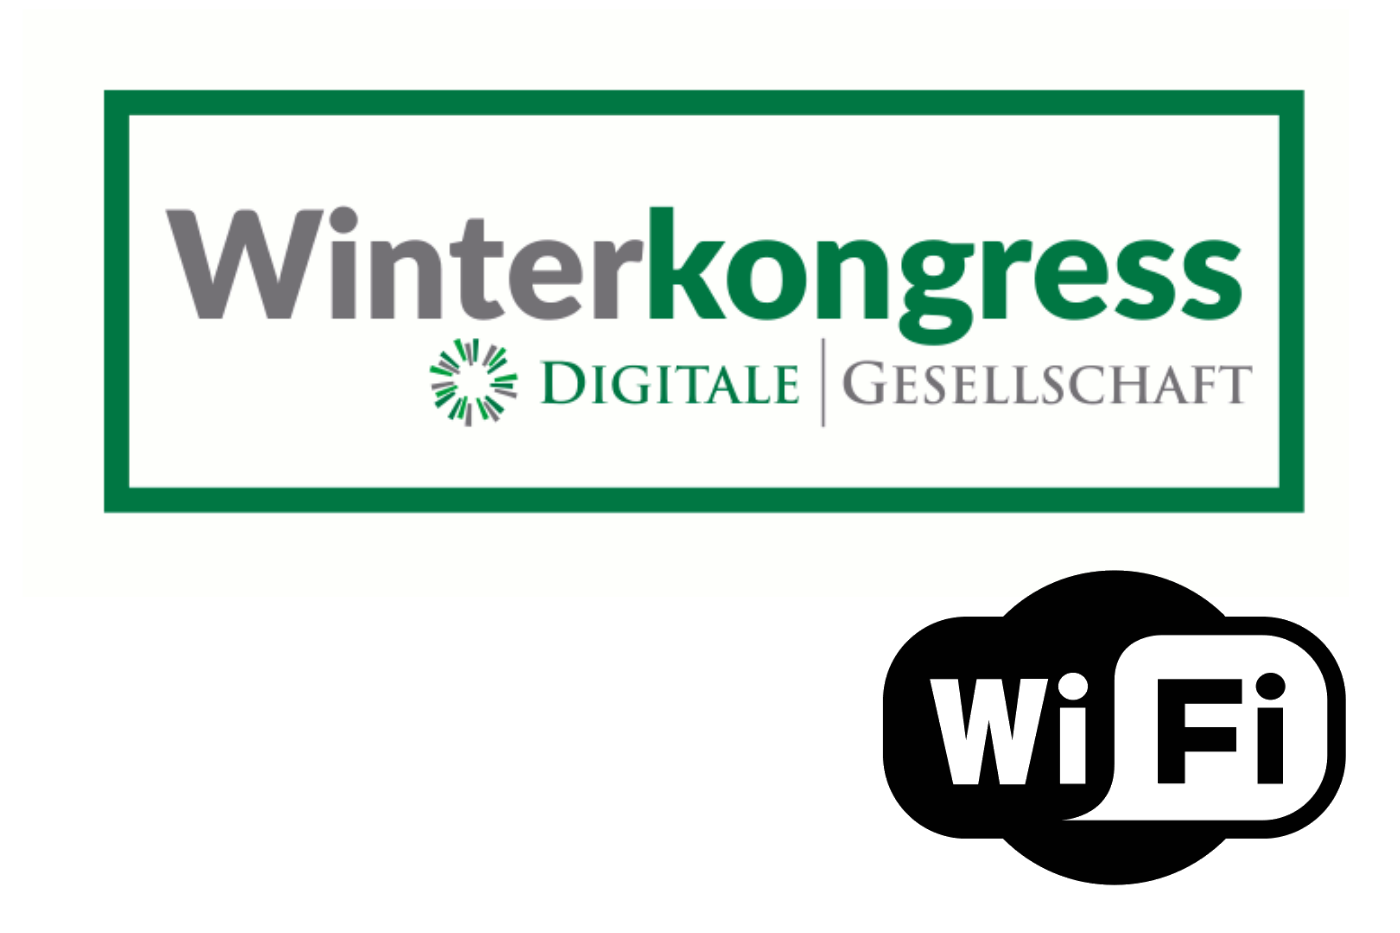 Digitale Gesellschaft - Winterkongress 2018